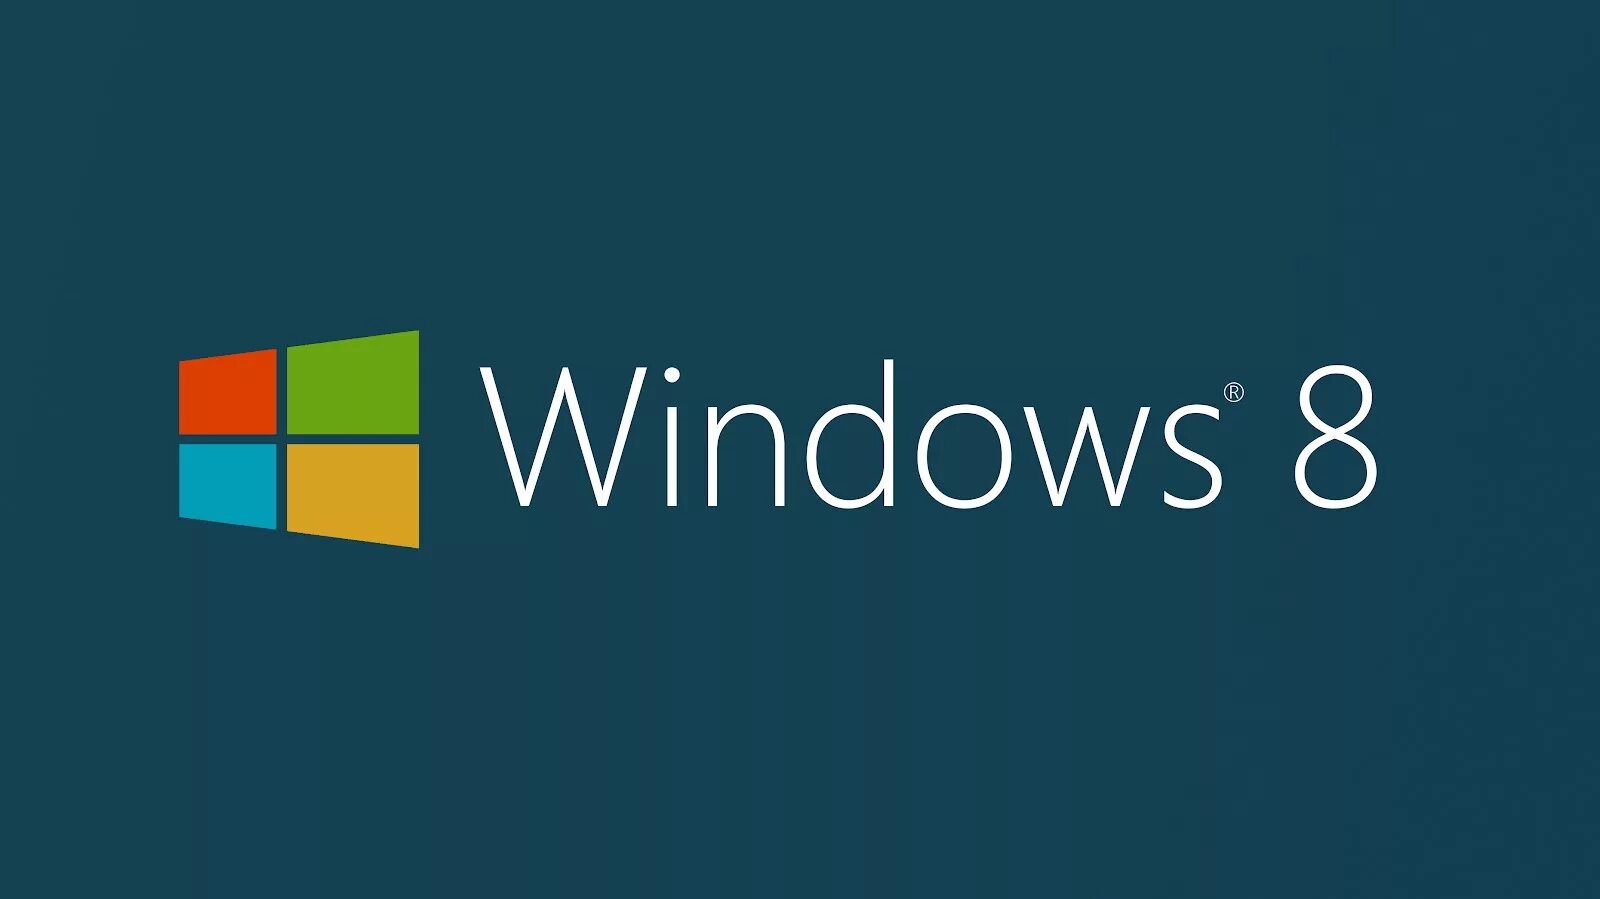 ОС виндовс 8. Операционная система Windows 8. Виндовс 8.1. Виндовс 8 система.